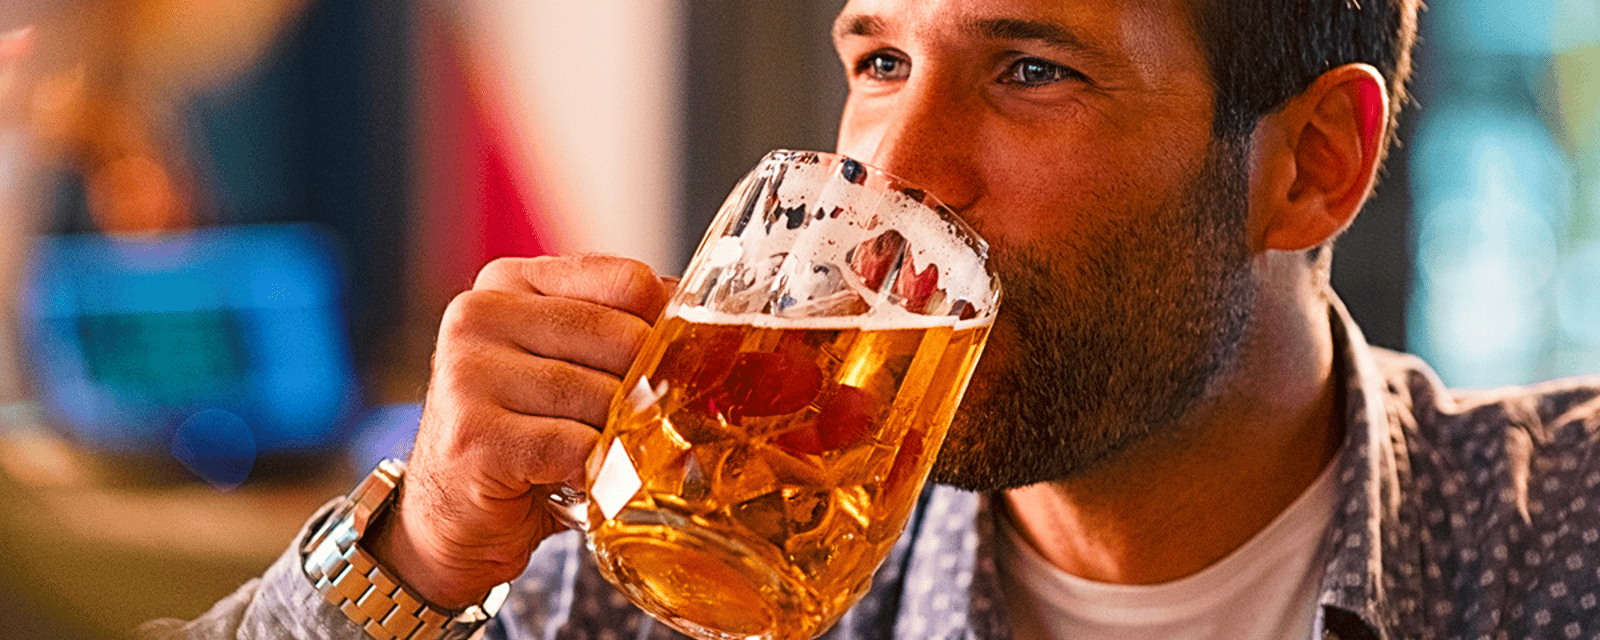 Boire une bière par jour pourrait être bon pour la santé, d'après une étude